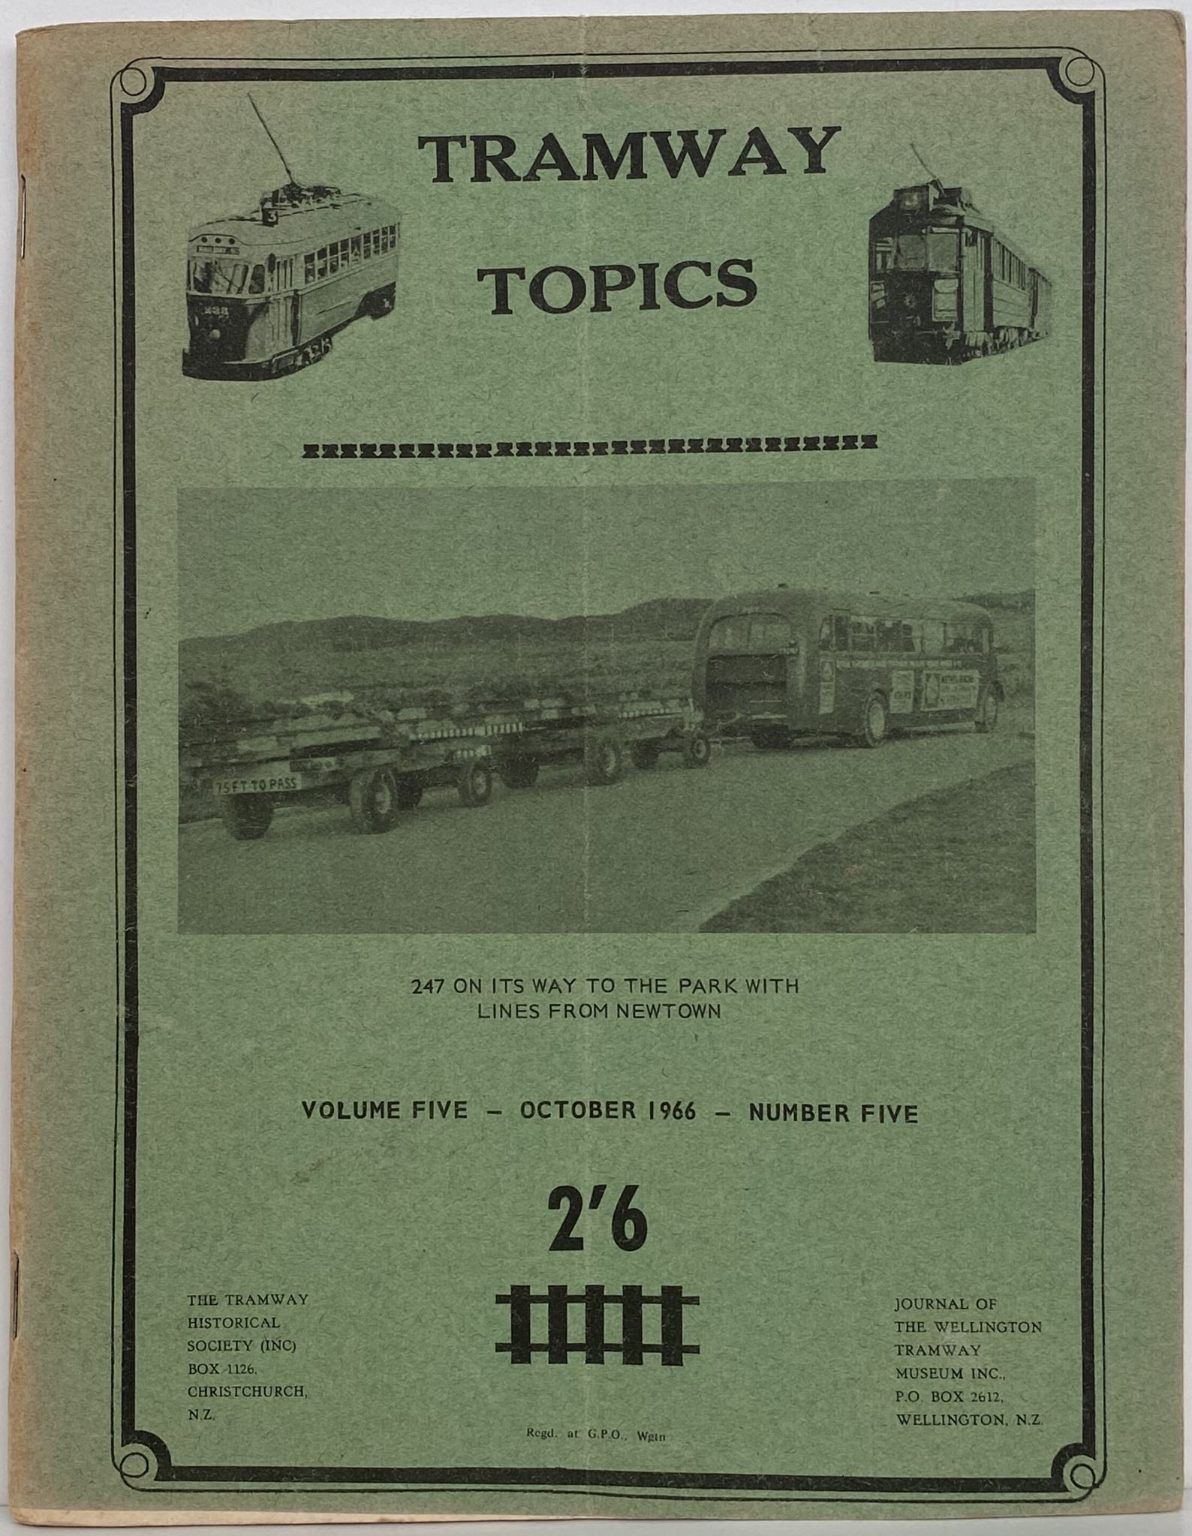 TRAMWAY TOPICS Vol 5, No 5, October 1966